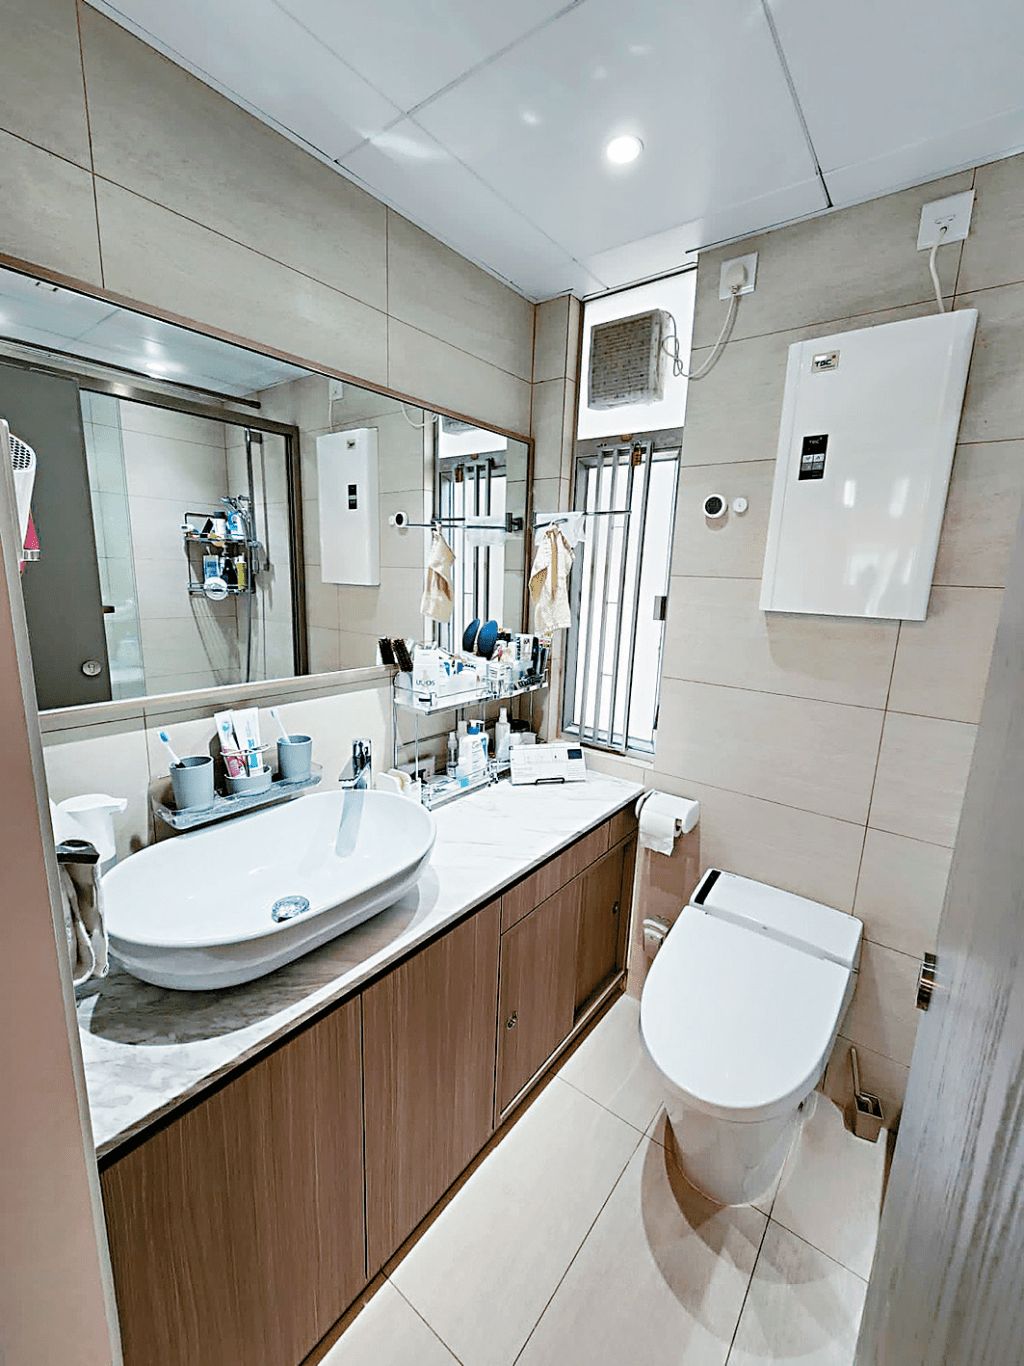 浴室打理整潔，設有大面鏡子，方便整理儀容。